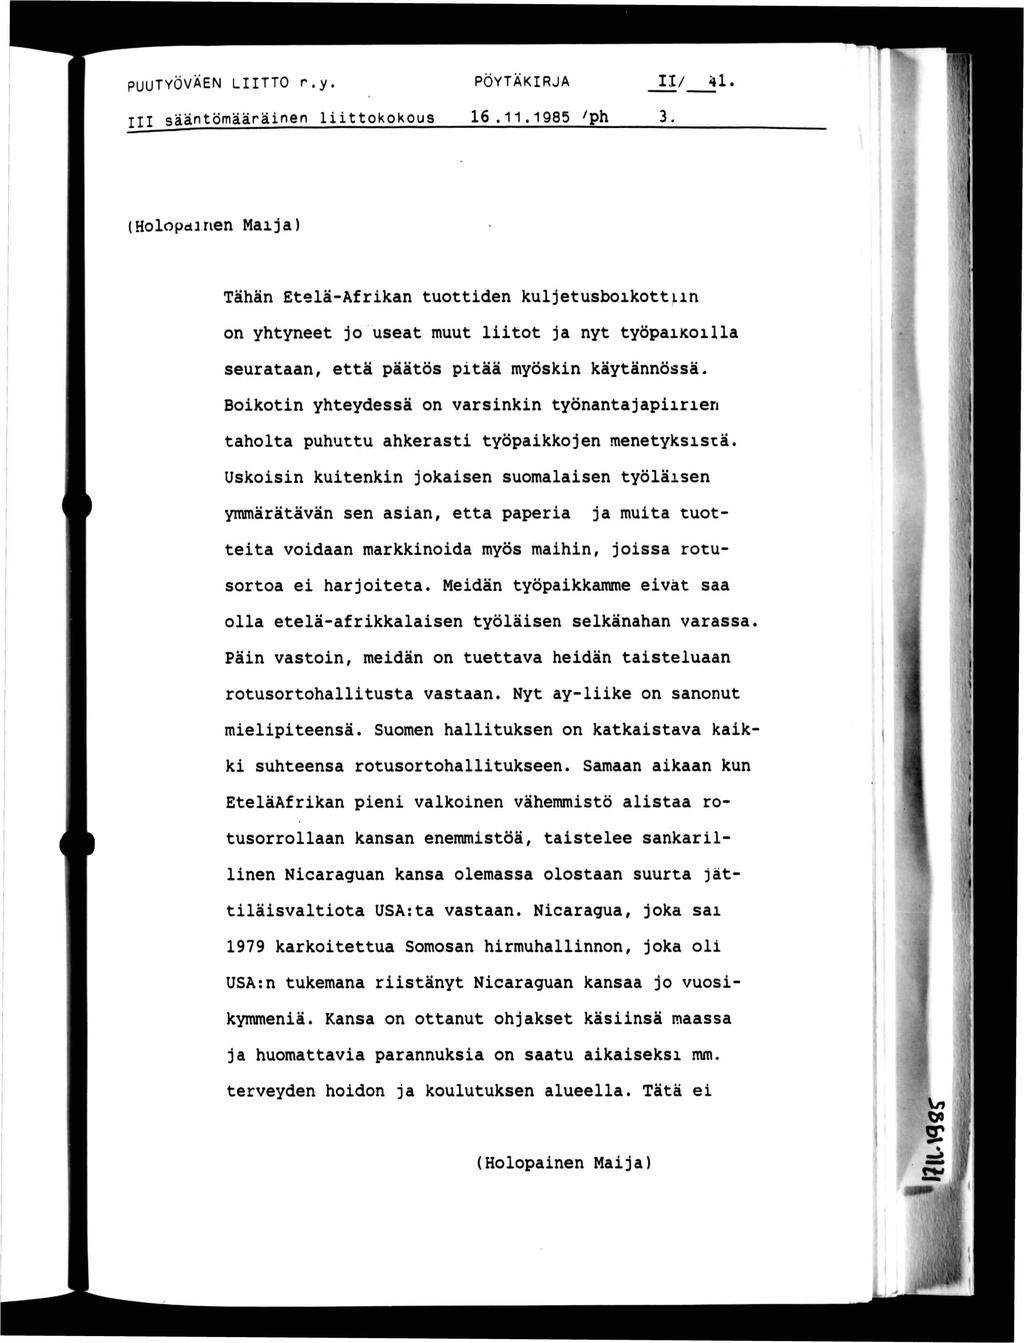 PUUTYÖVÄEN LTTO r.y. PÖYTÄKRJA / 41. sääntömääränen lttokokous 16.11.1985 ^ph 3.